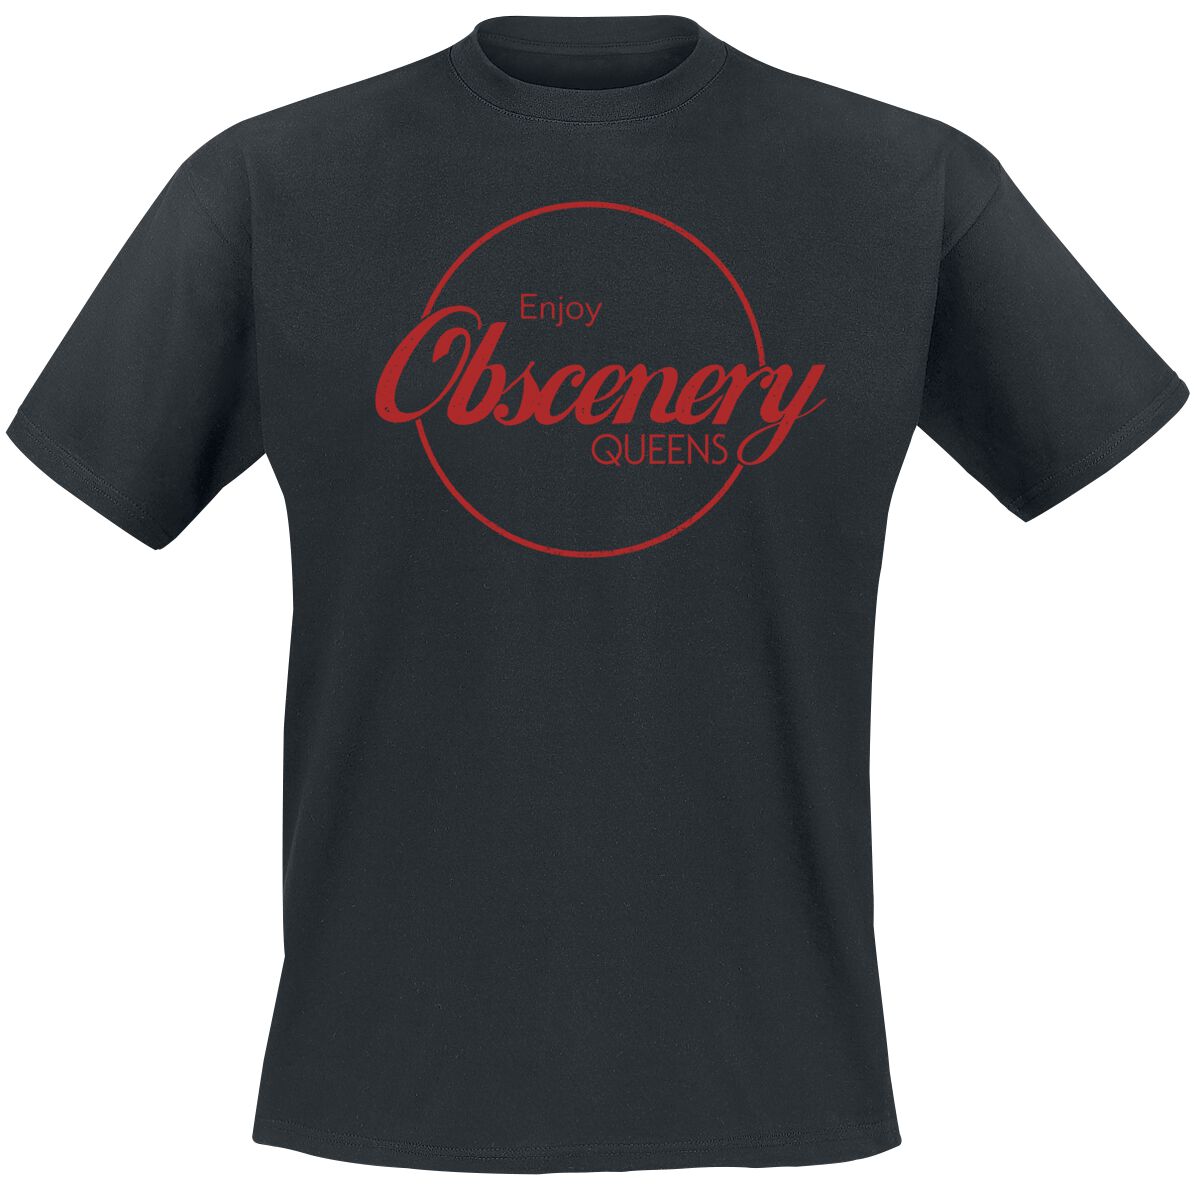 Queens Of The Stone Age T-Shirt - Enjoy Obscenery - S bis XXL - für Männer - Größe S - schwarz  - Lizenziertes Merchandise!